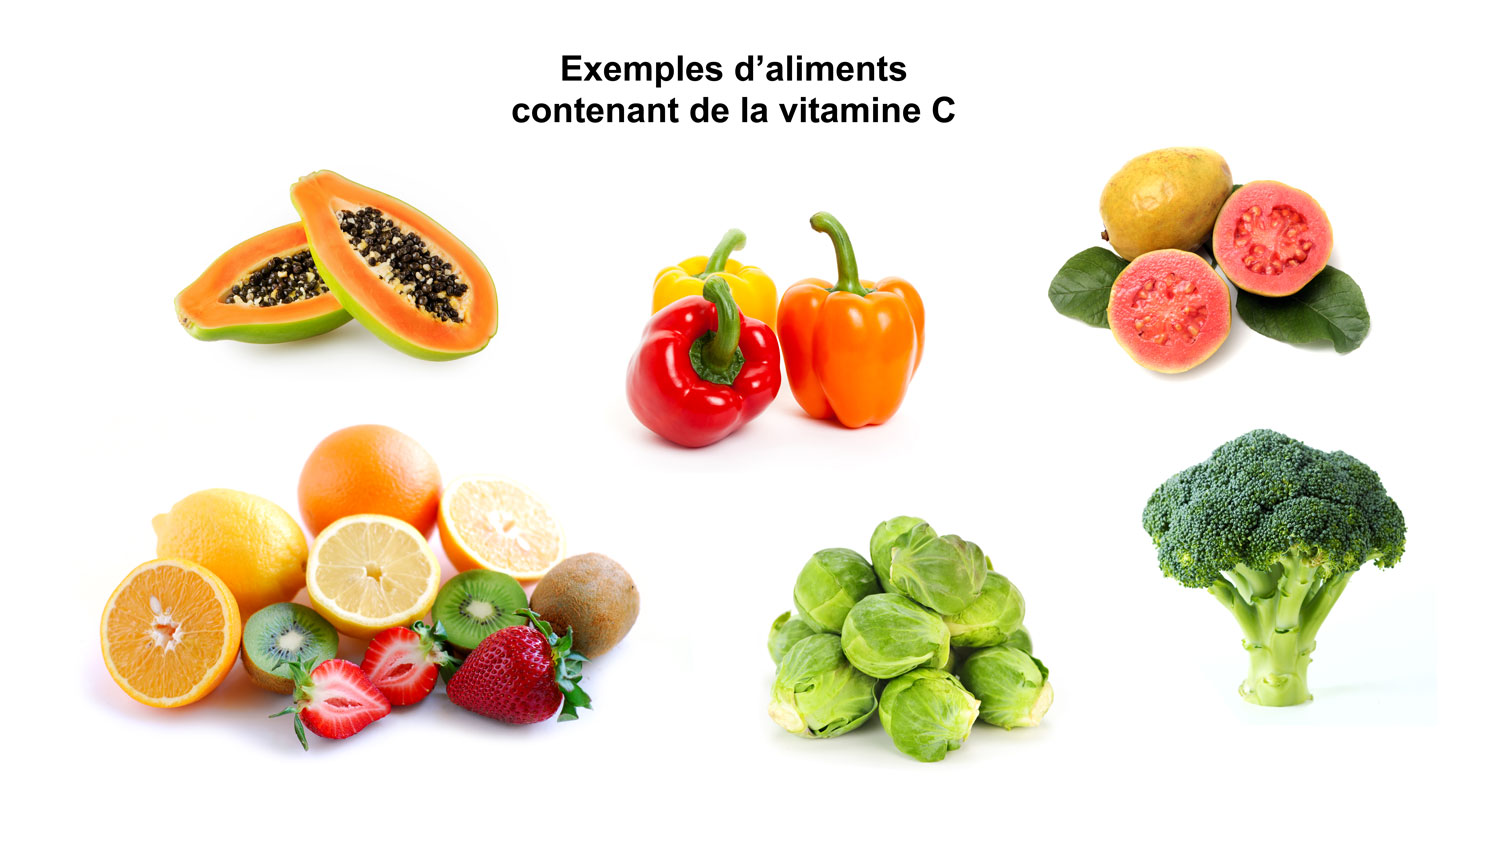 Exemples d'aliments contenant de la vitamine C.